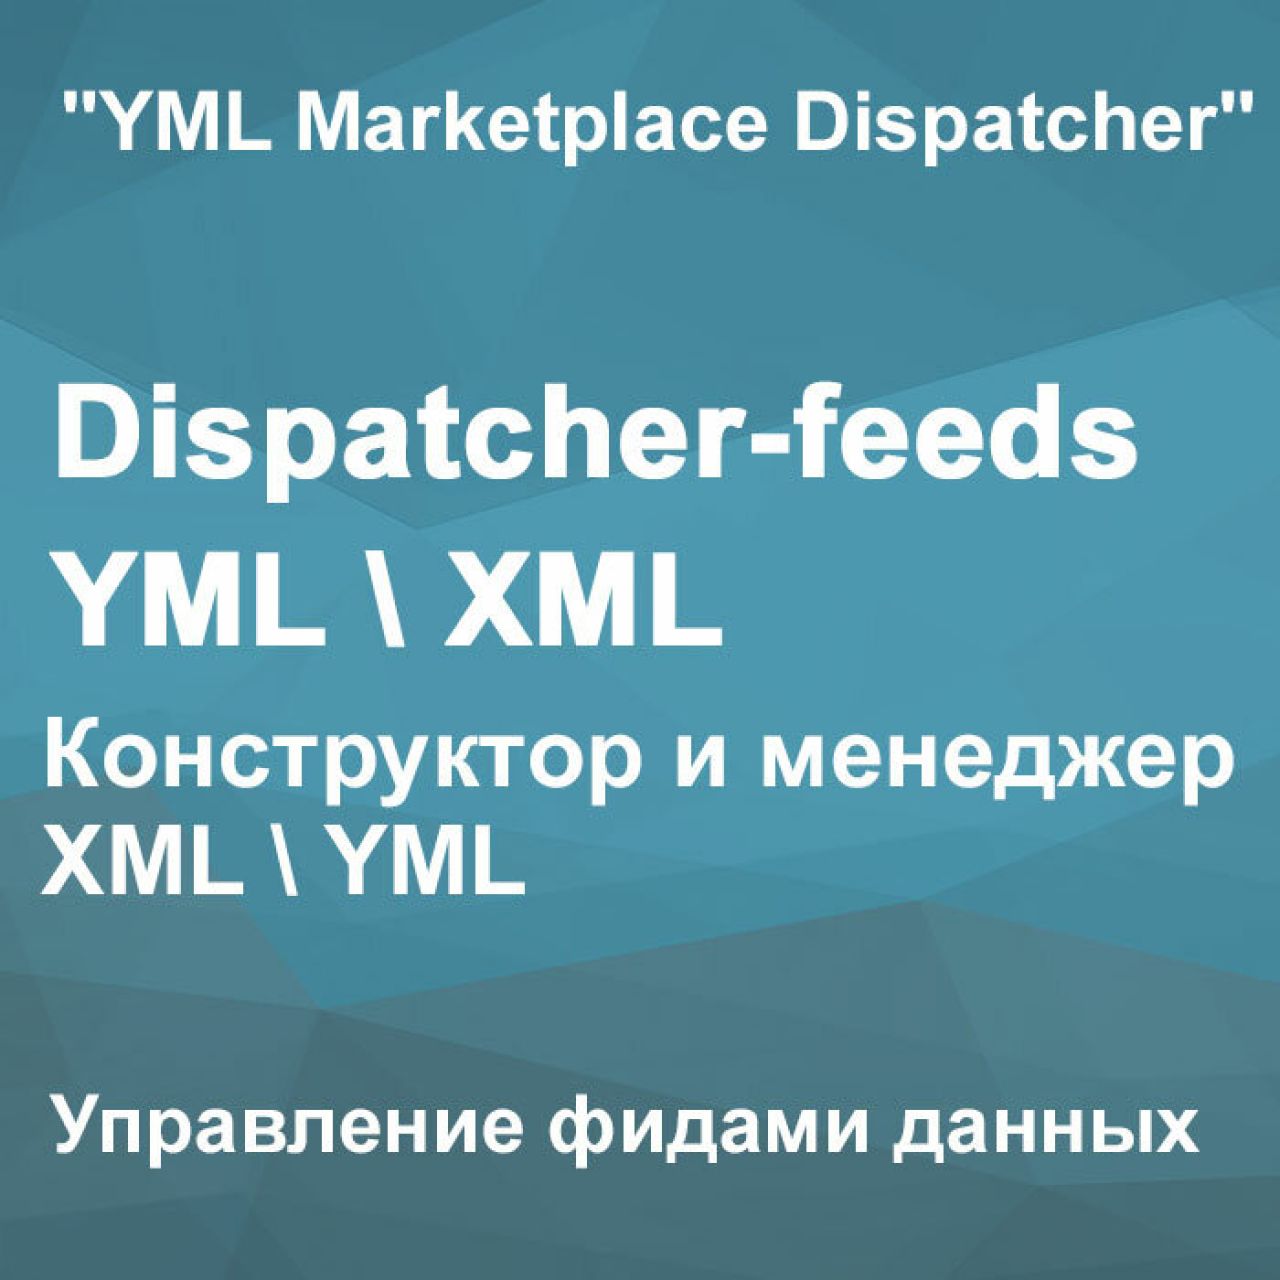 Dispatcher-feeds YML/XML-Управление фидами данных для OpenCart 2.3 из категории Обмен данными для CMS OpenCart (ОпенКарт)